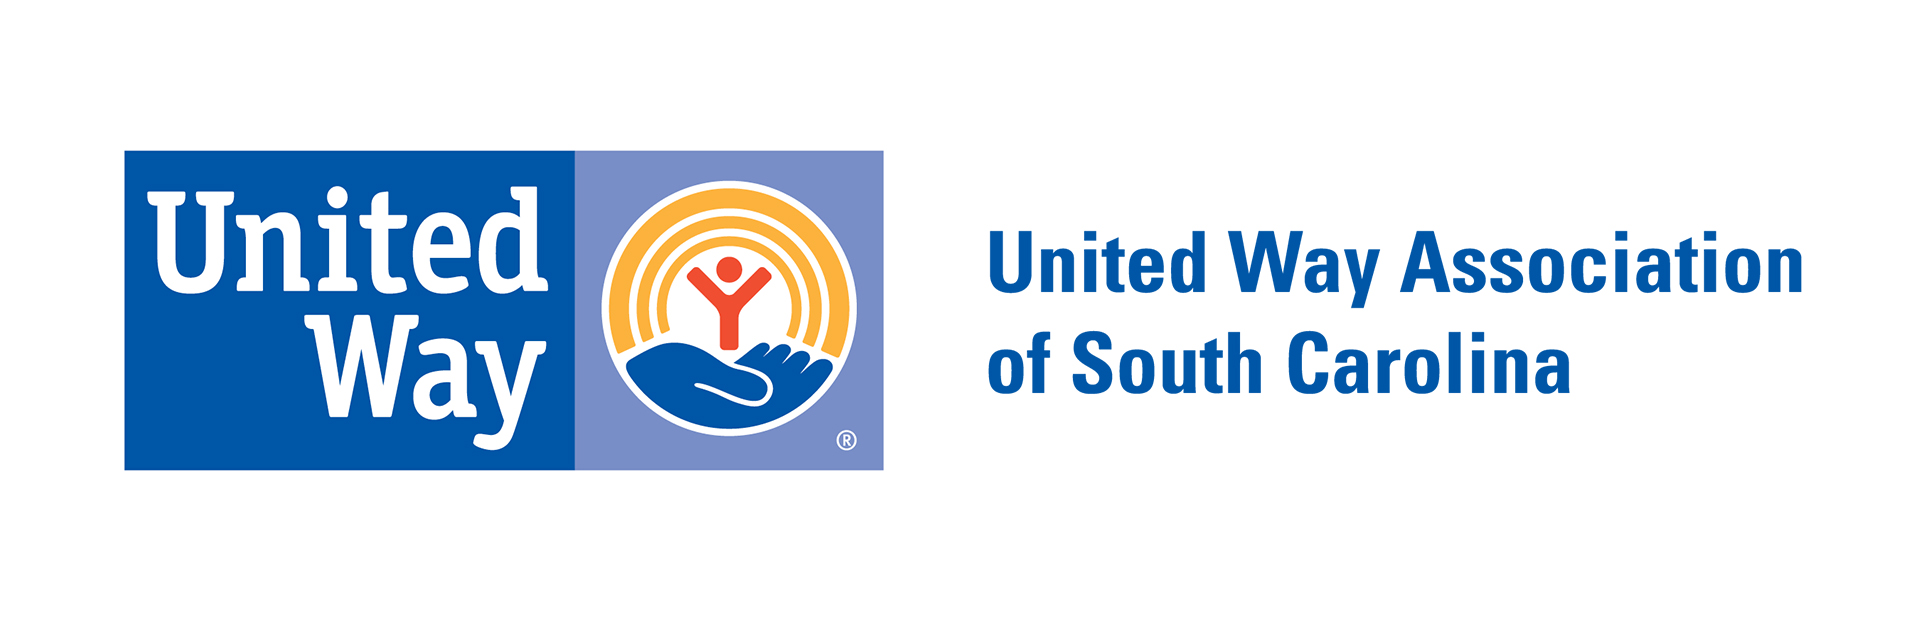 United Way of South Carolina Logo